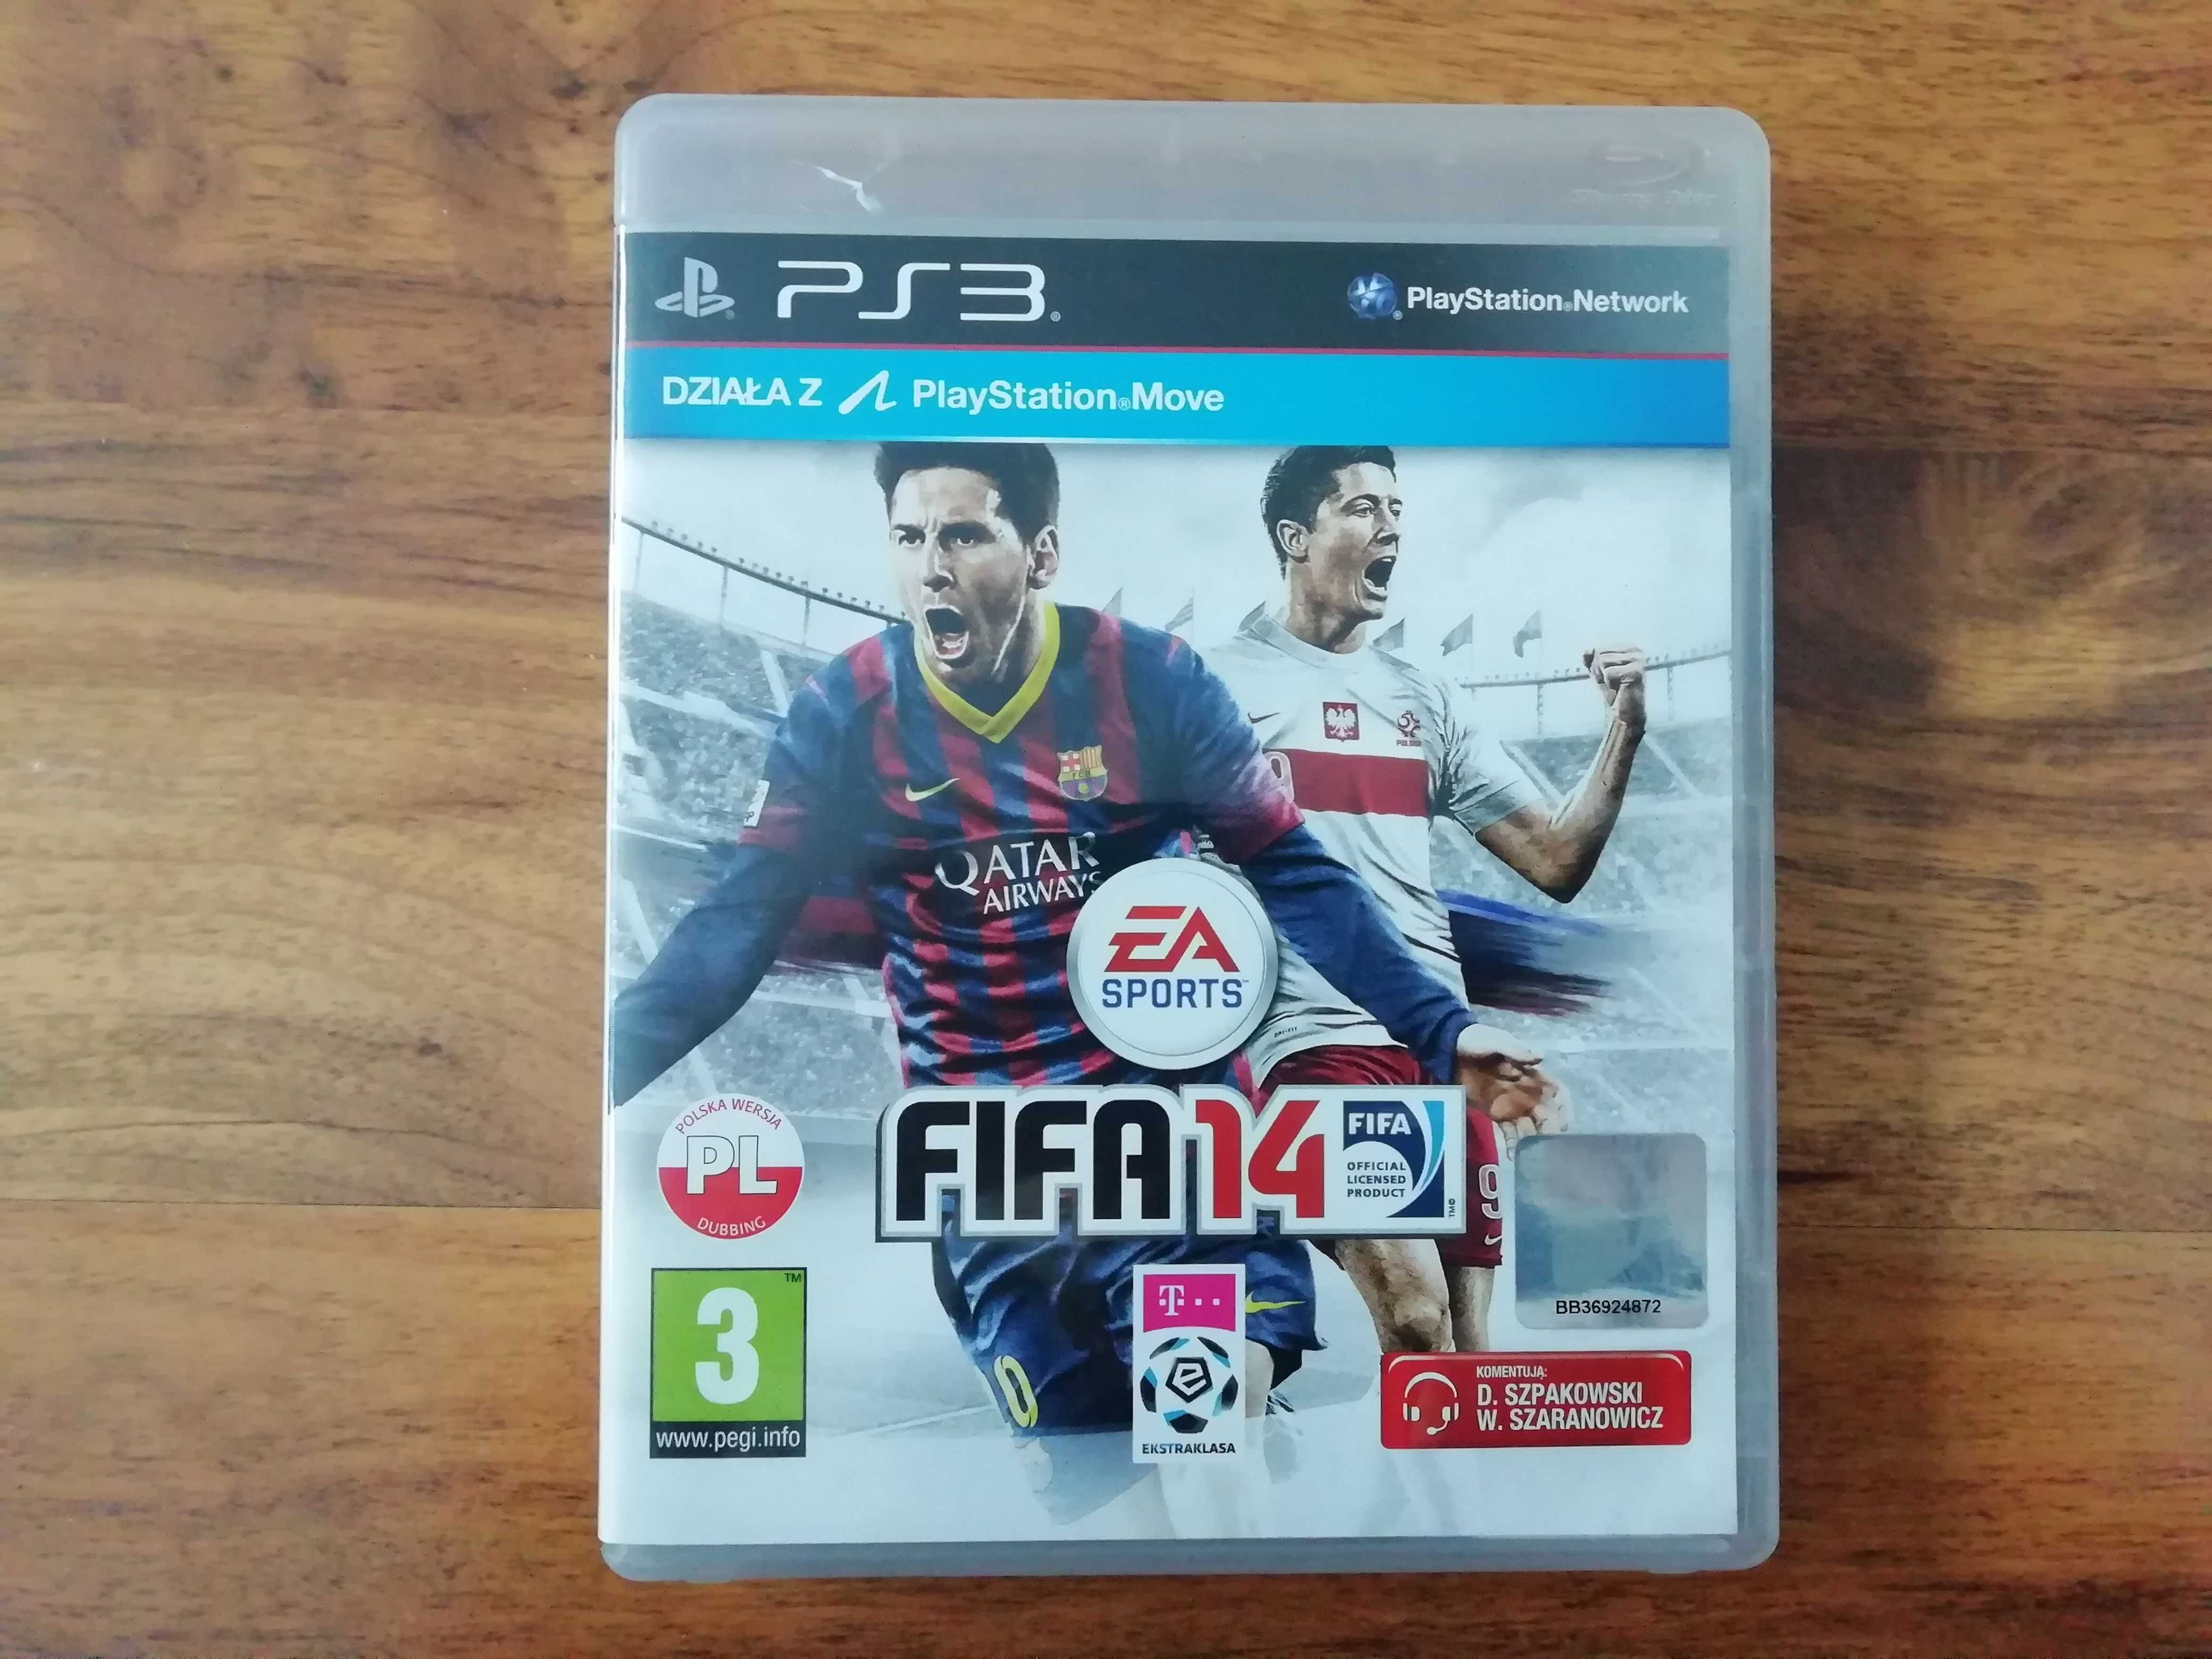 FIFA 09, FIFA 11, FIFA 12, FIFA 13, FIFA 14, FIFA 15